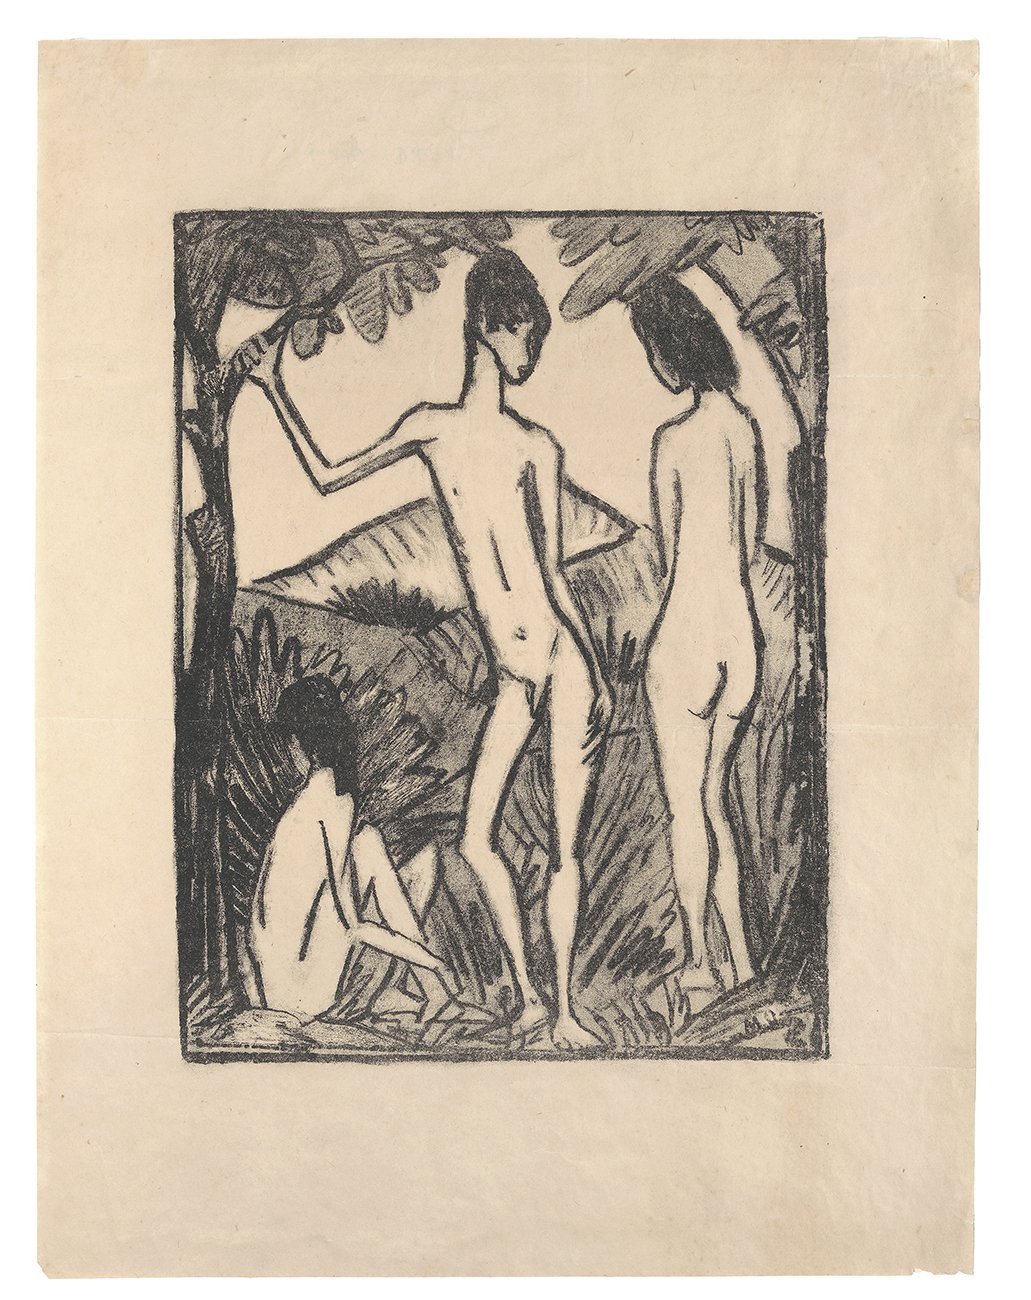 Stehender Knabe und zwei Mädchen (Kunsthalle Bielefeld Public Domain Mark)